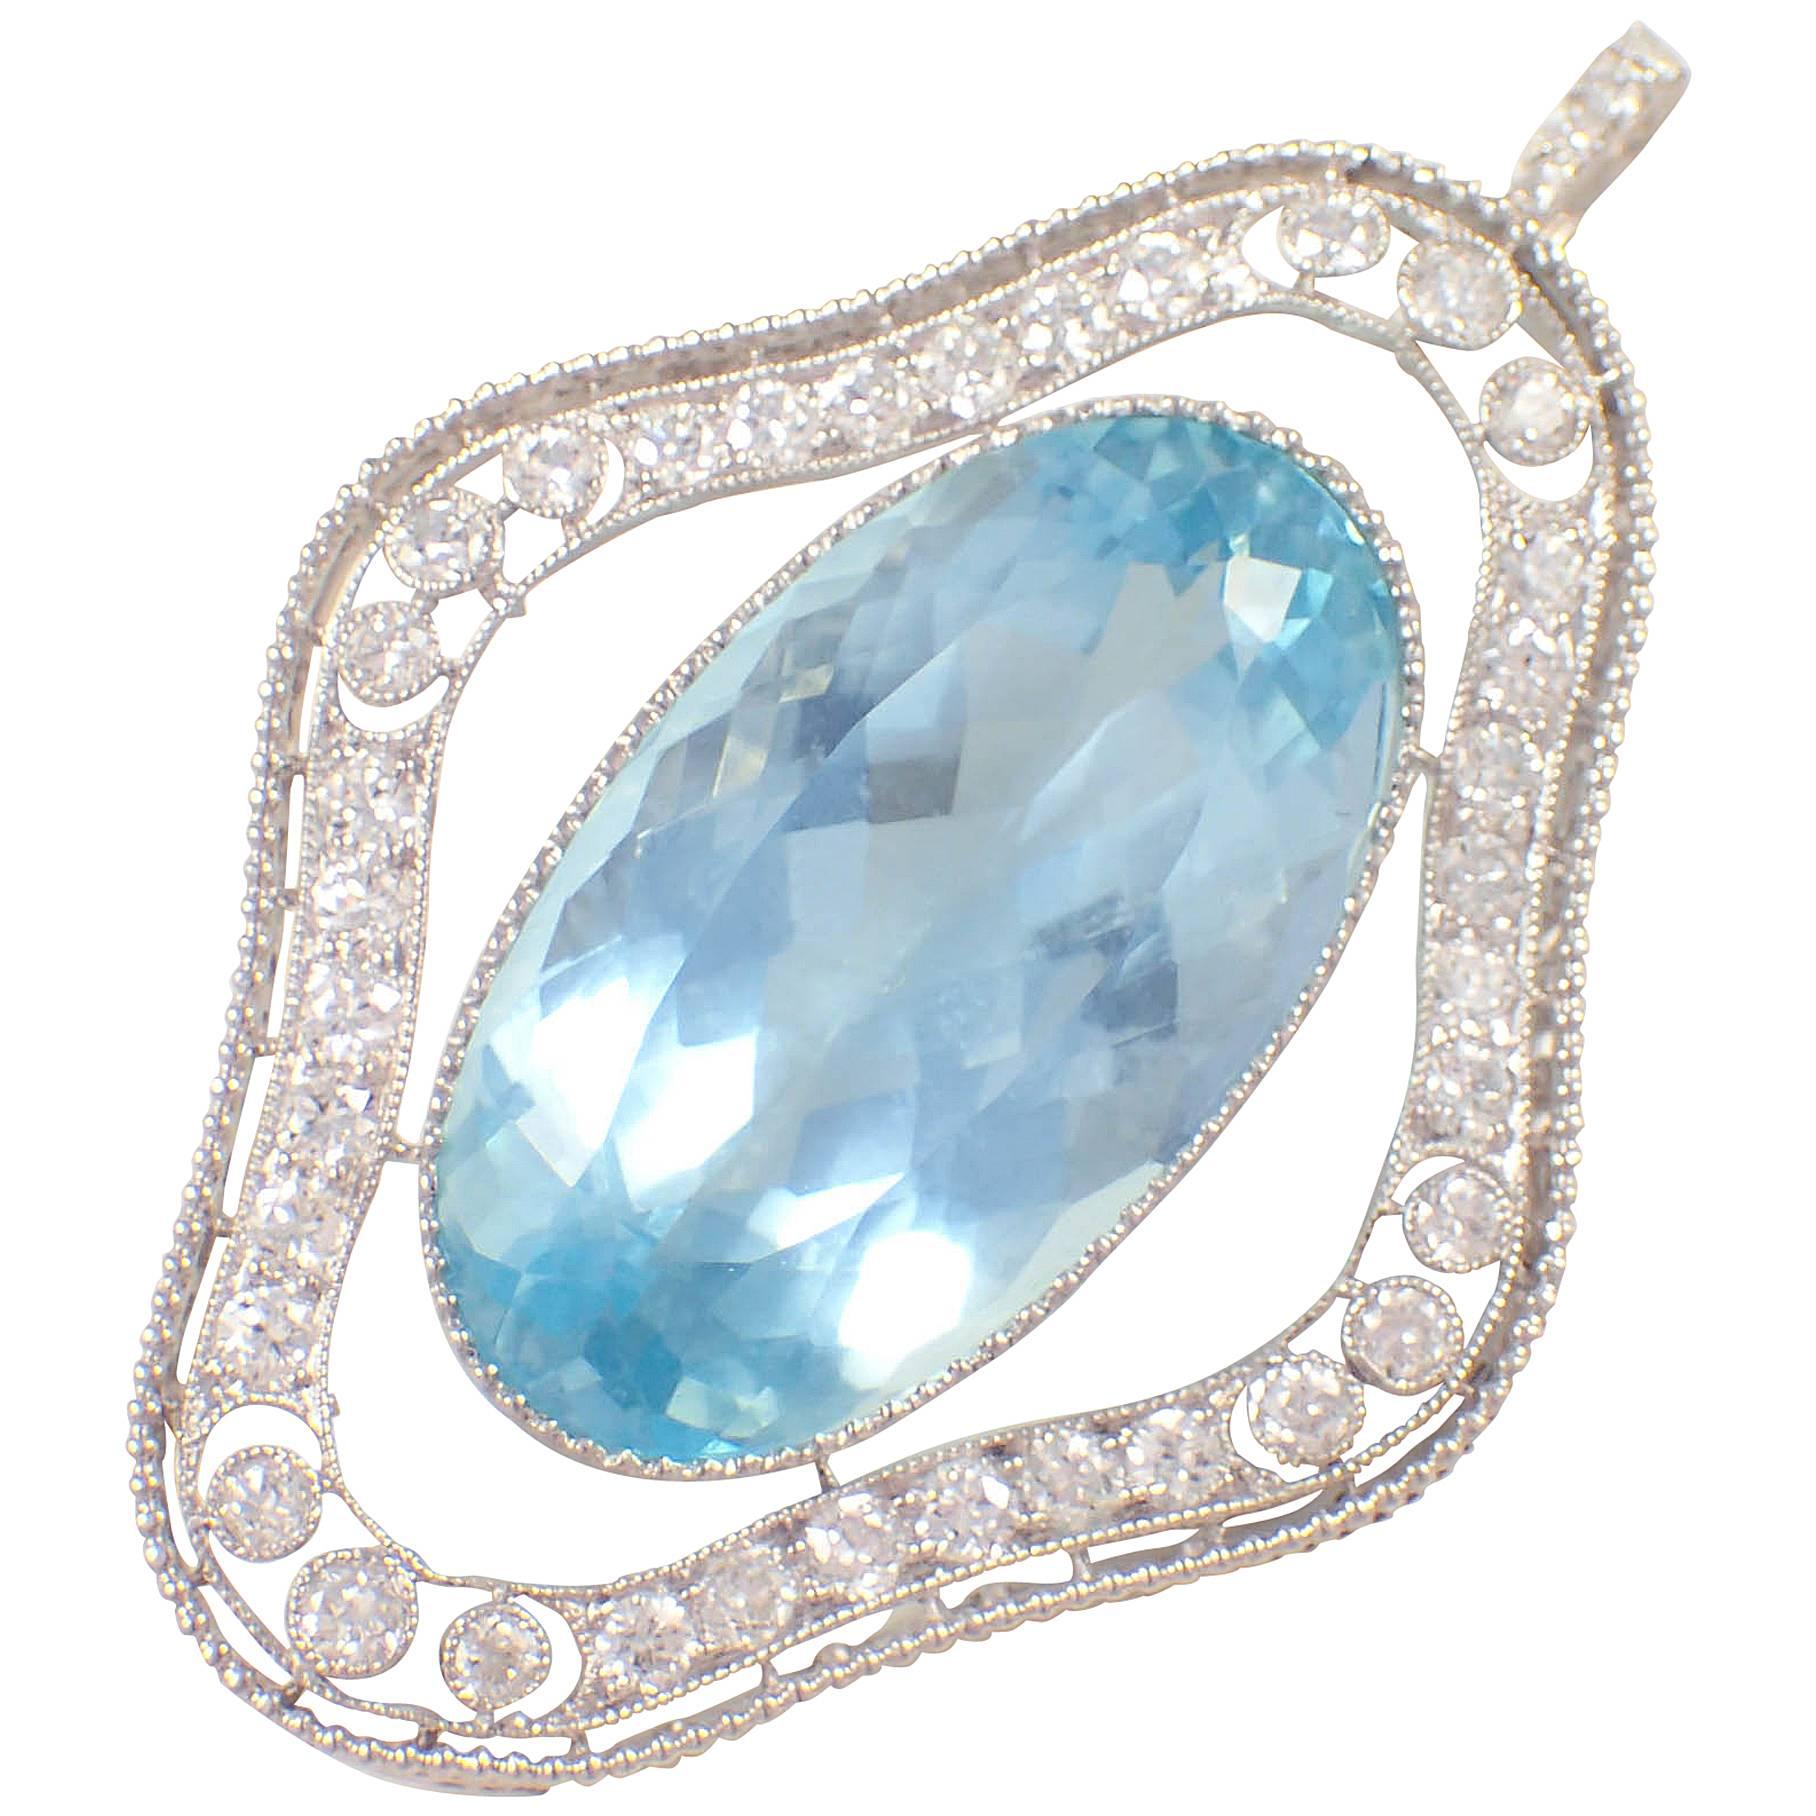 Marcus & Co. Art Deco Aquamarine Diamond Platinum Pendant